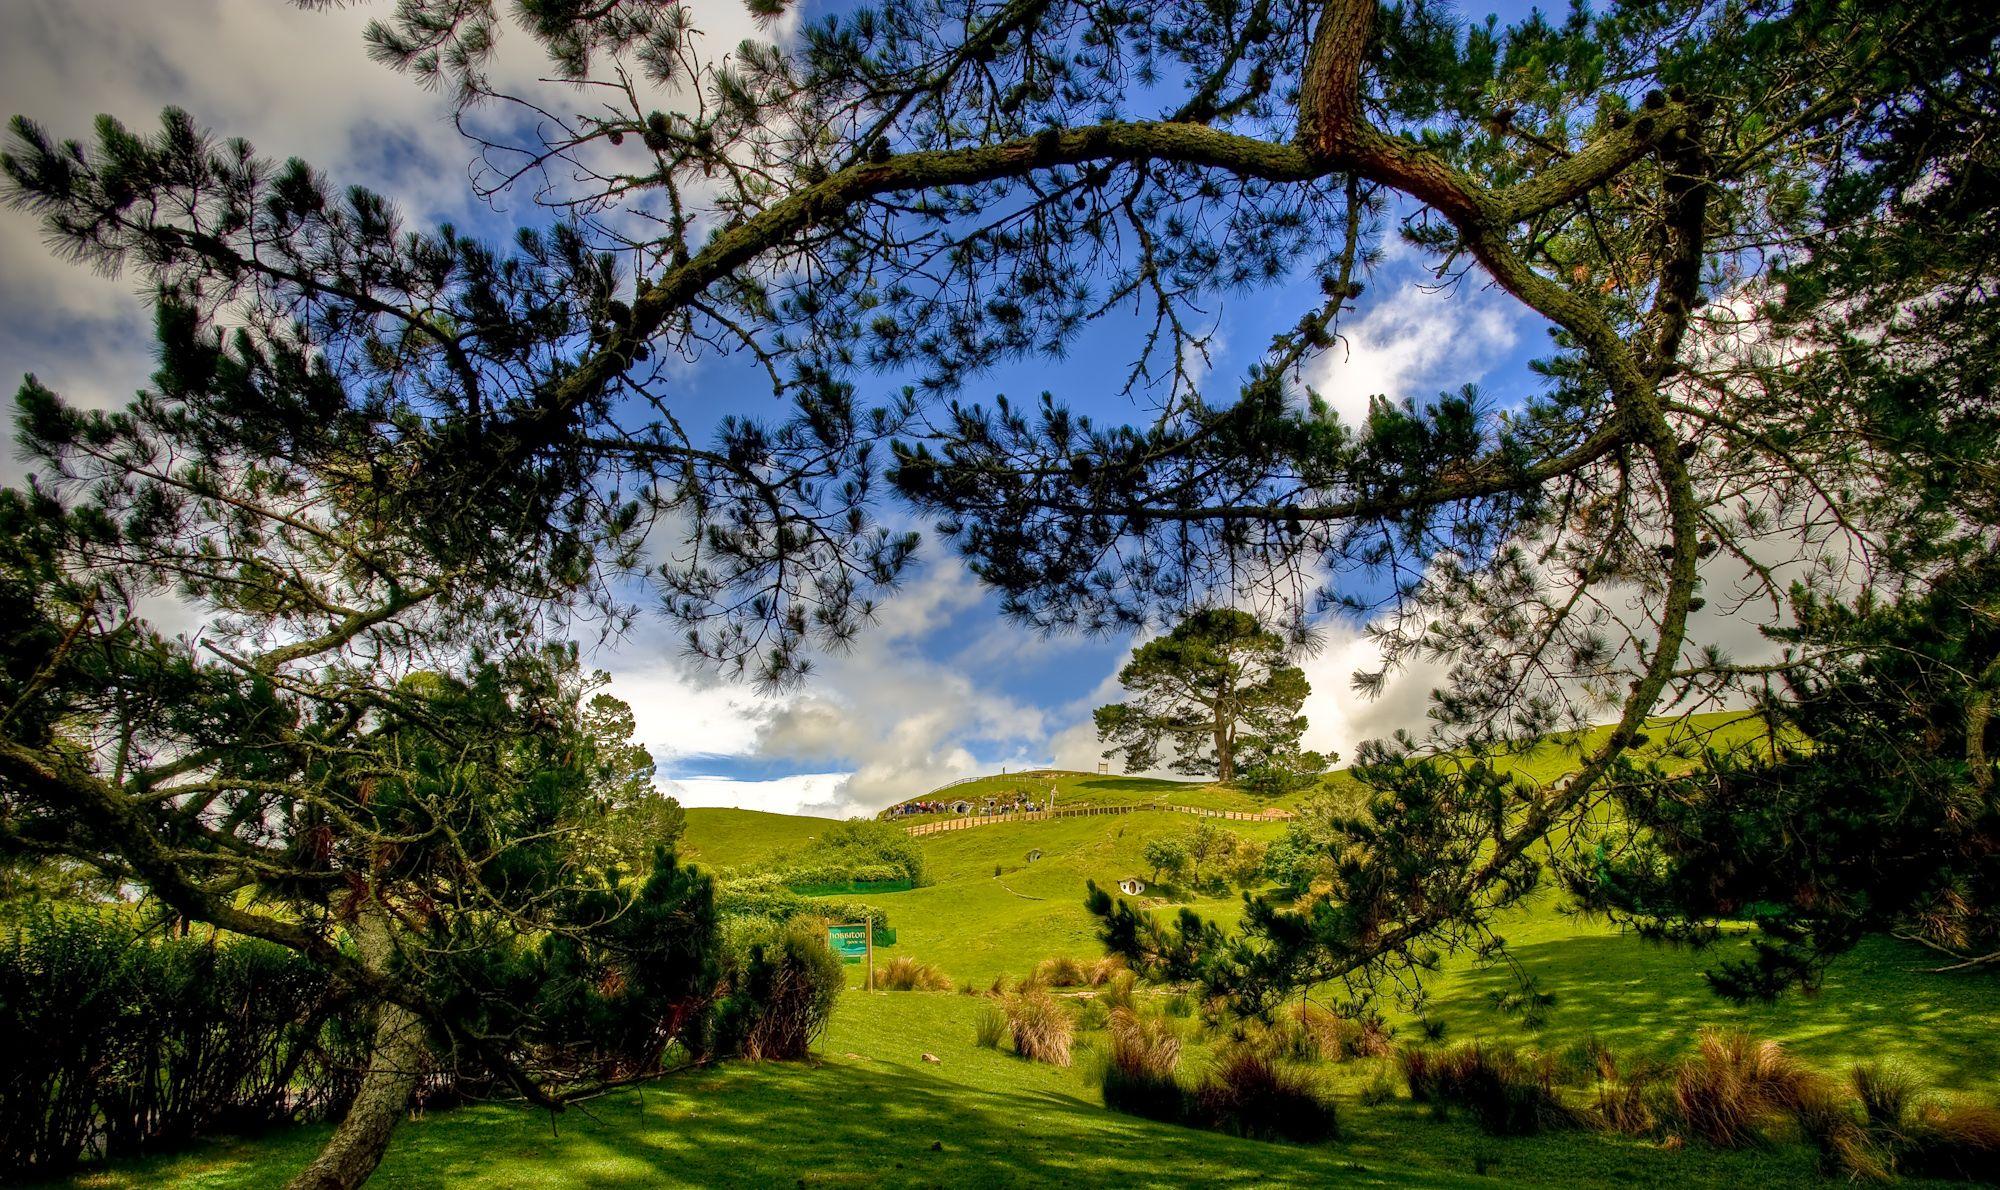 Hobbiton -New Zealand. Kiwi Travel and Tours Ltd